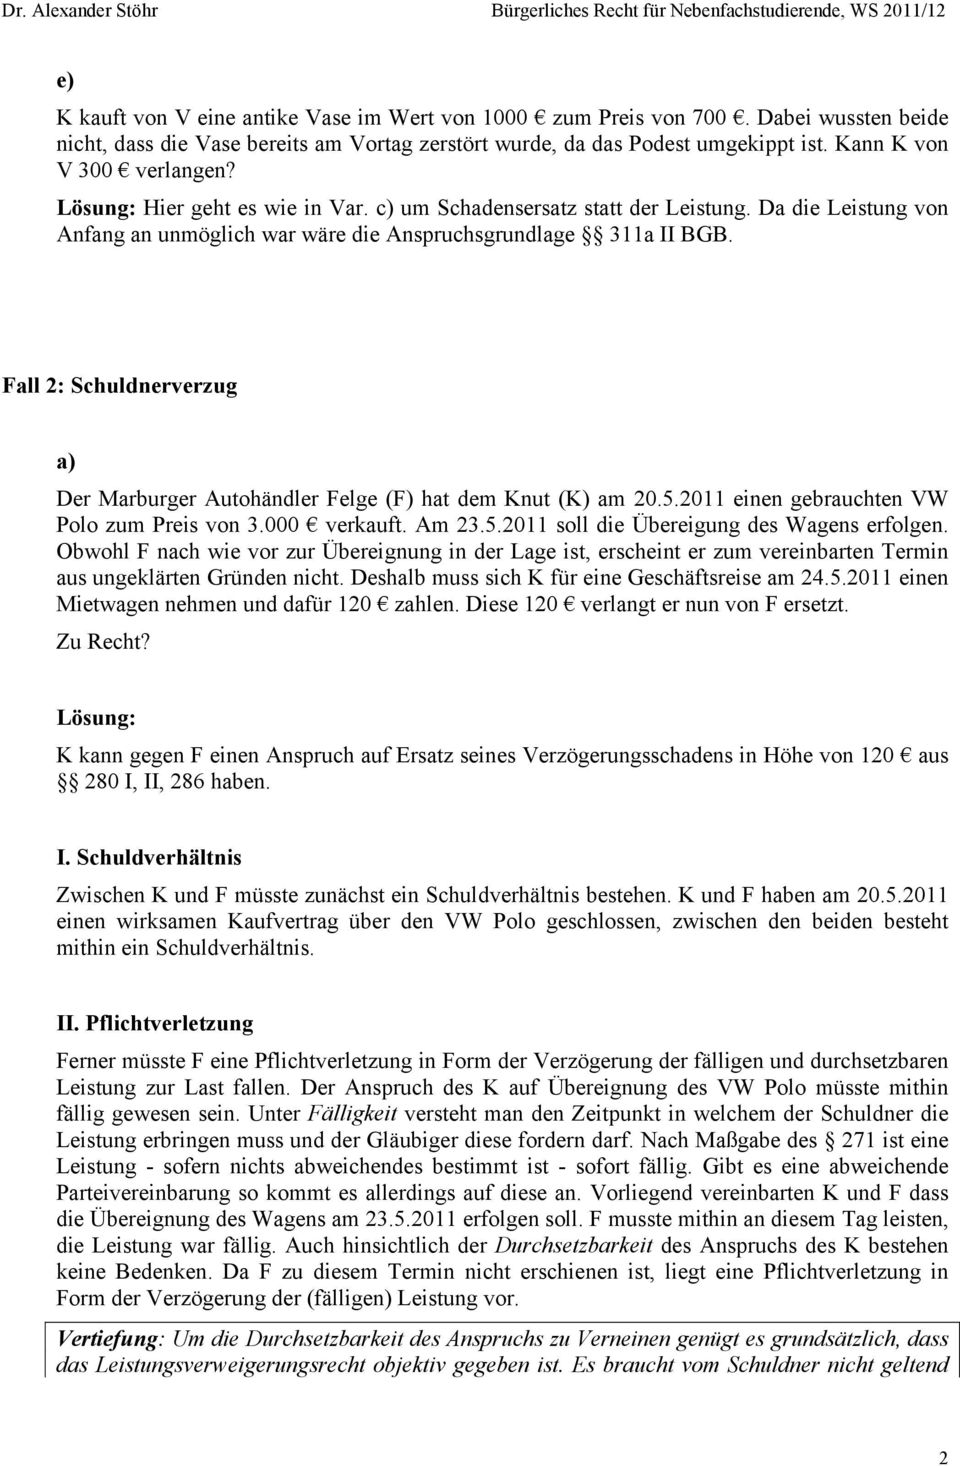 Fall 2: Schuldnerverzug a) Der Marburger Autohändler Felge (F) hat dem Knut (K) am 20.5.2011 einen gebrauchten VW Polo zum Preis von 3.000 verkauft. Am 23.5.2011 soll die Übereigung des Wagens erfolgen.